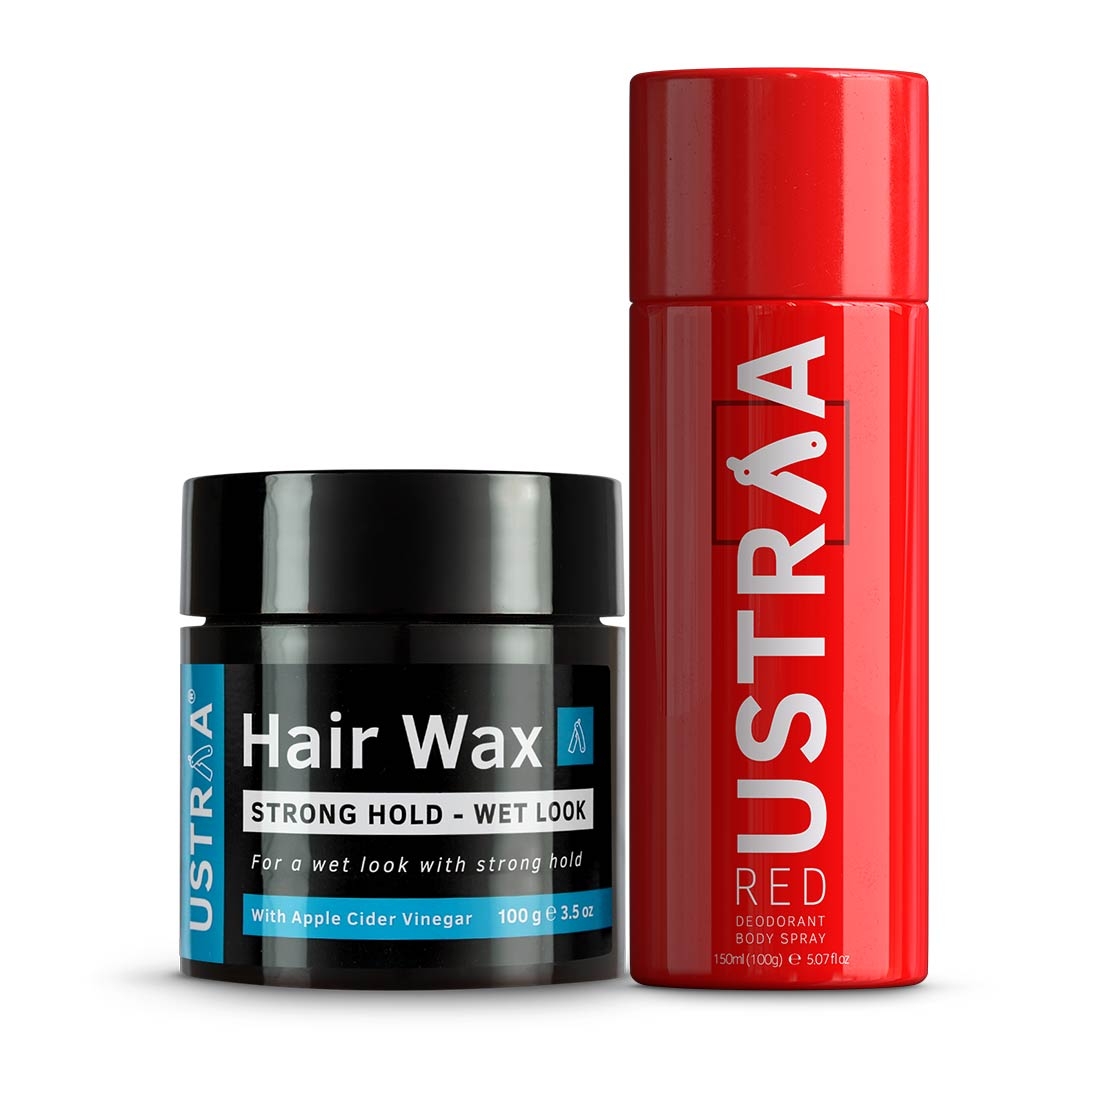 Ustraaa Red Deodorant 150ml & Hair Wax Wet Look 100g